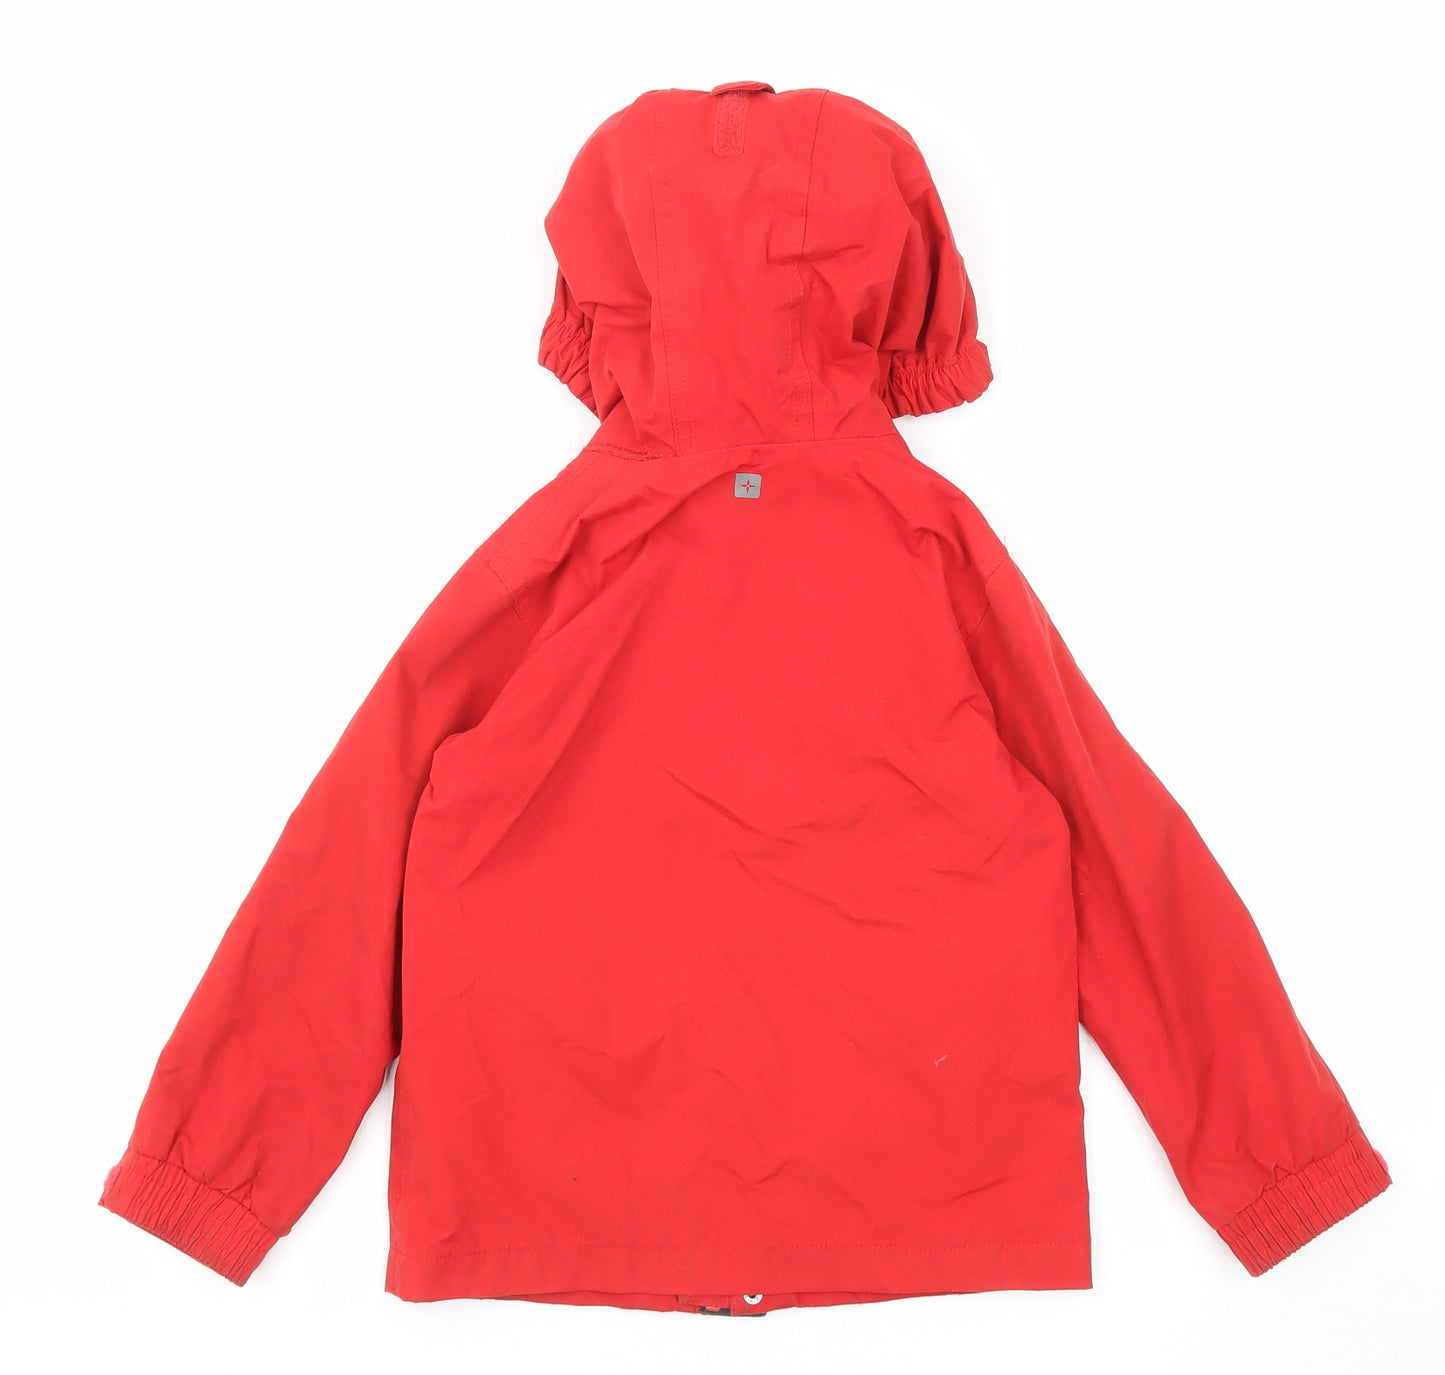 Mountain Warehouse Boys Red Windbreaker Jacket Size 5-6 Years Zip